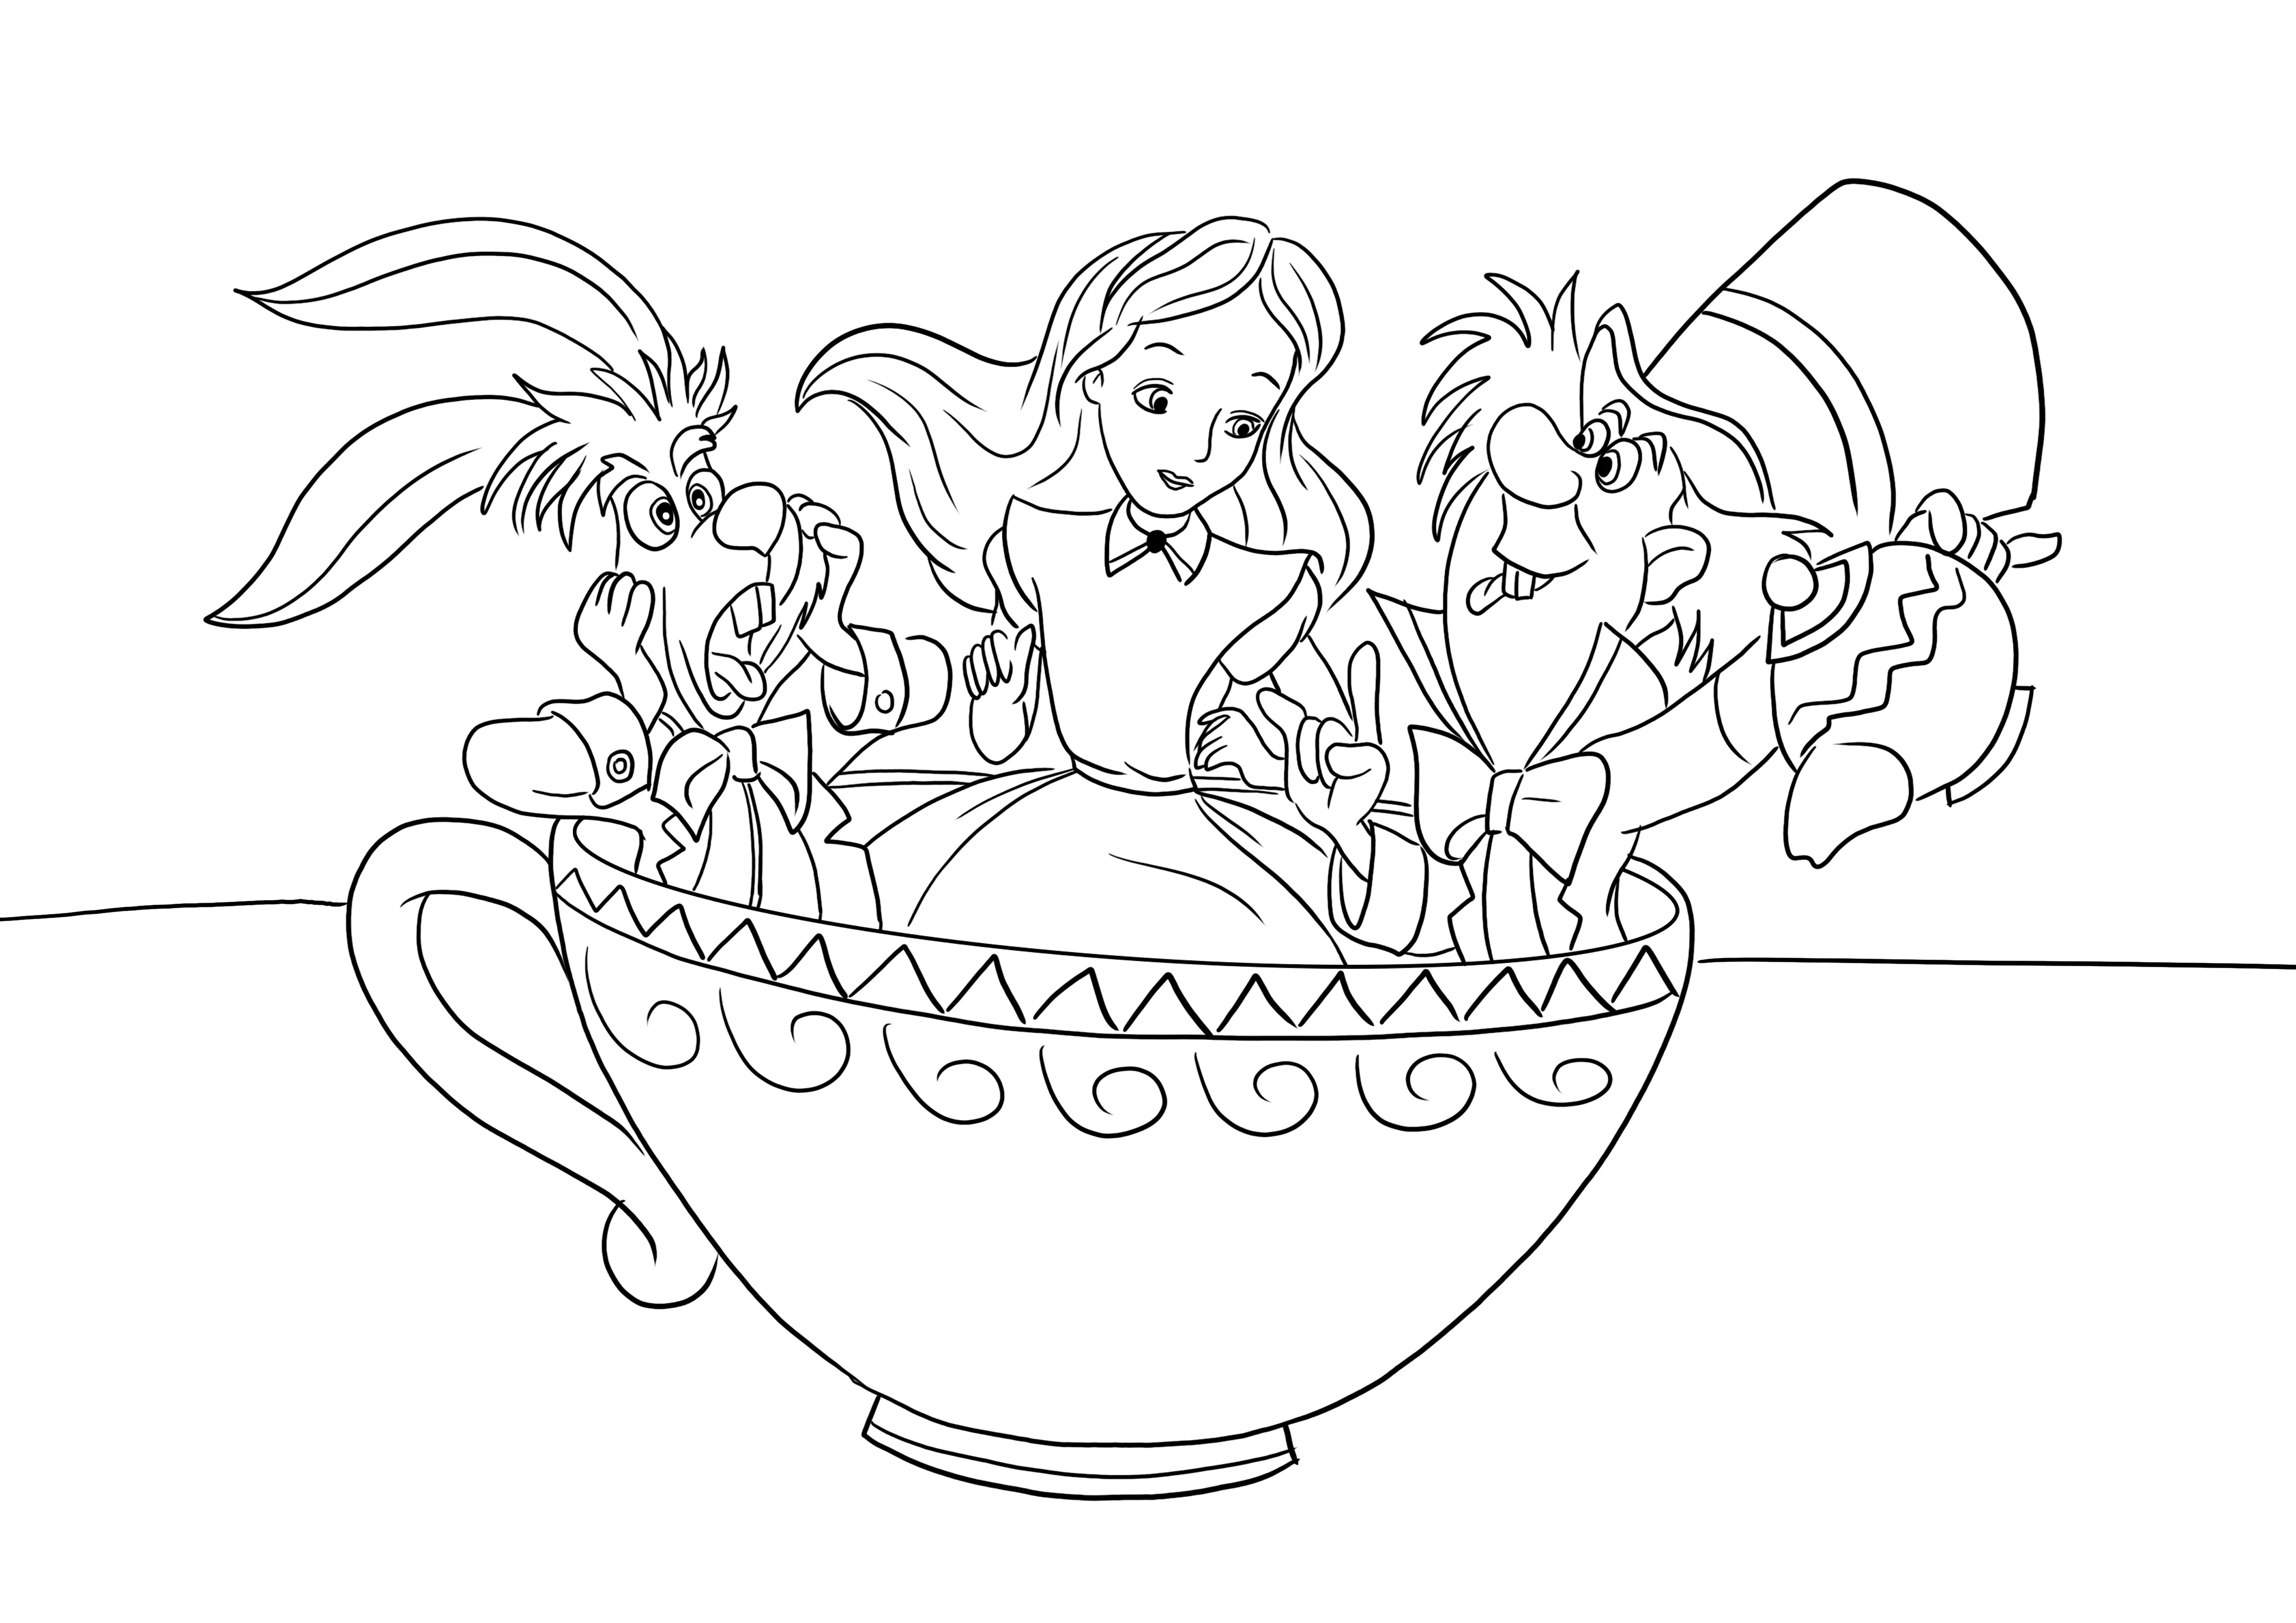 Bir çay bardağı Çılgın Şapkacı-Alice-Tavşan boyama resmi indirmek veya yazdırmak için ücretsiz